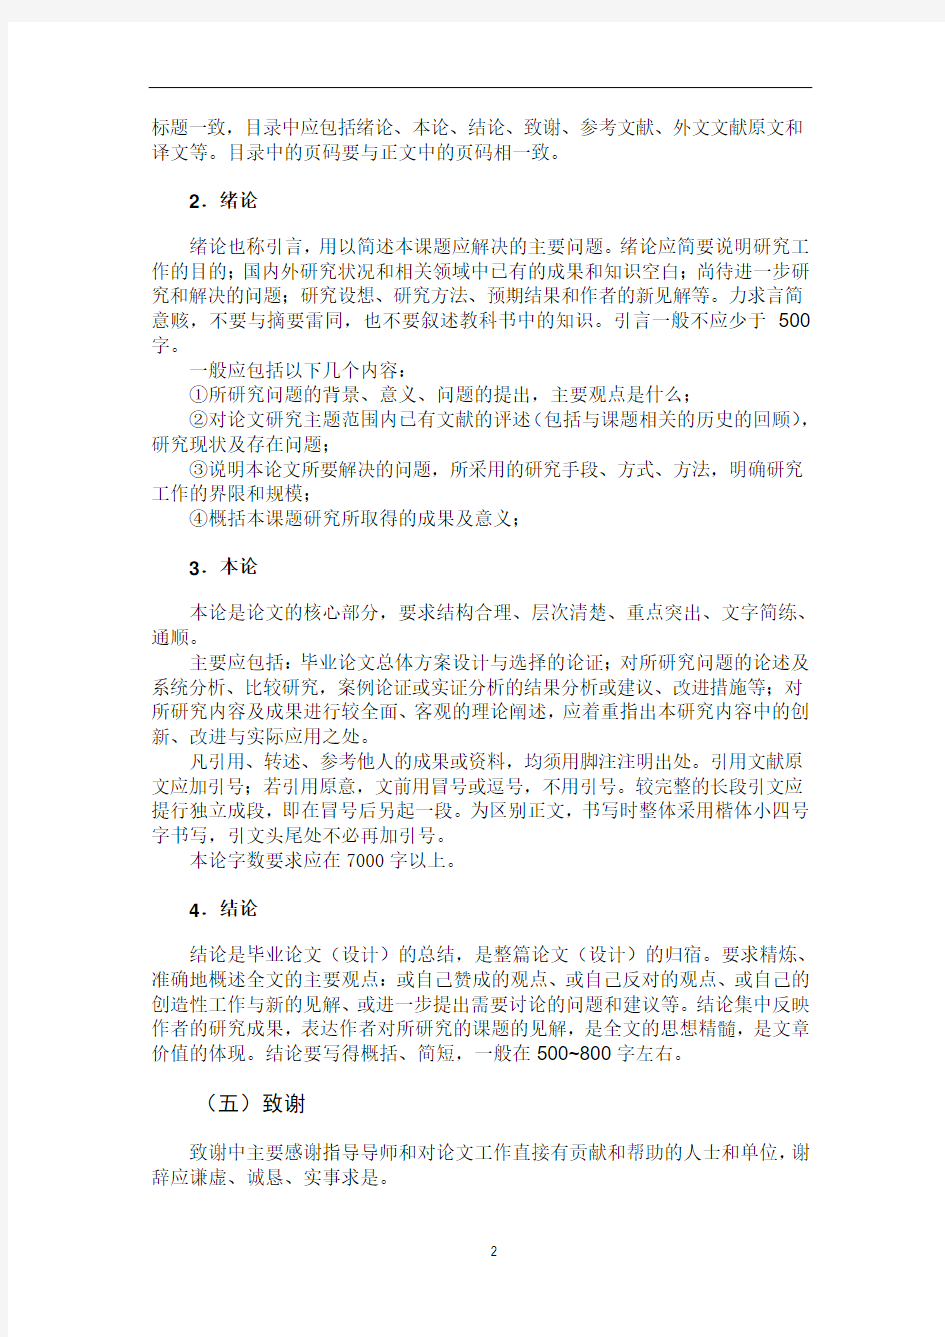 重庆邮电大学法学院毕业论文的内容要求和格式要